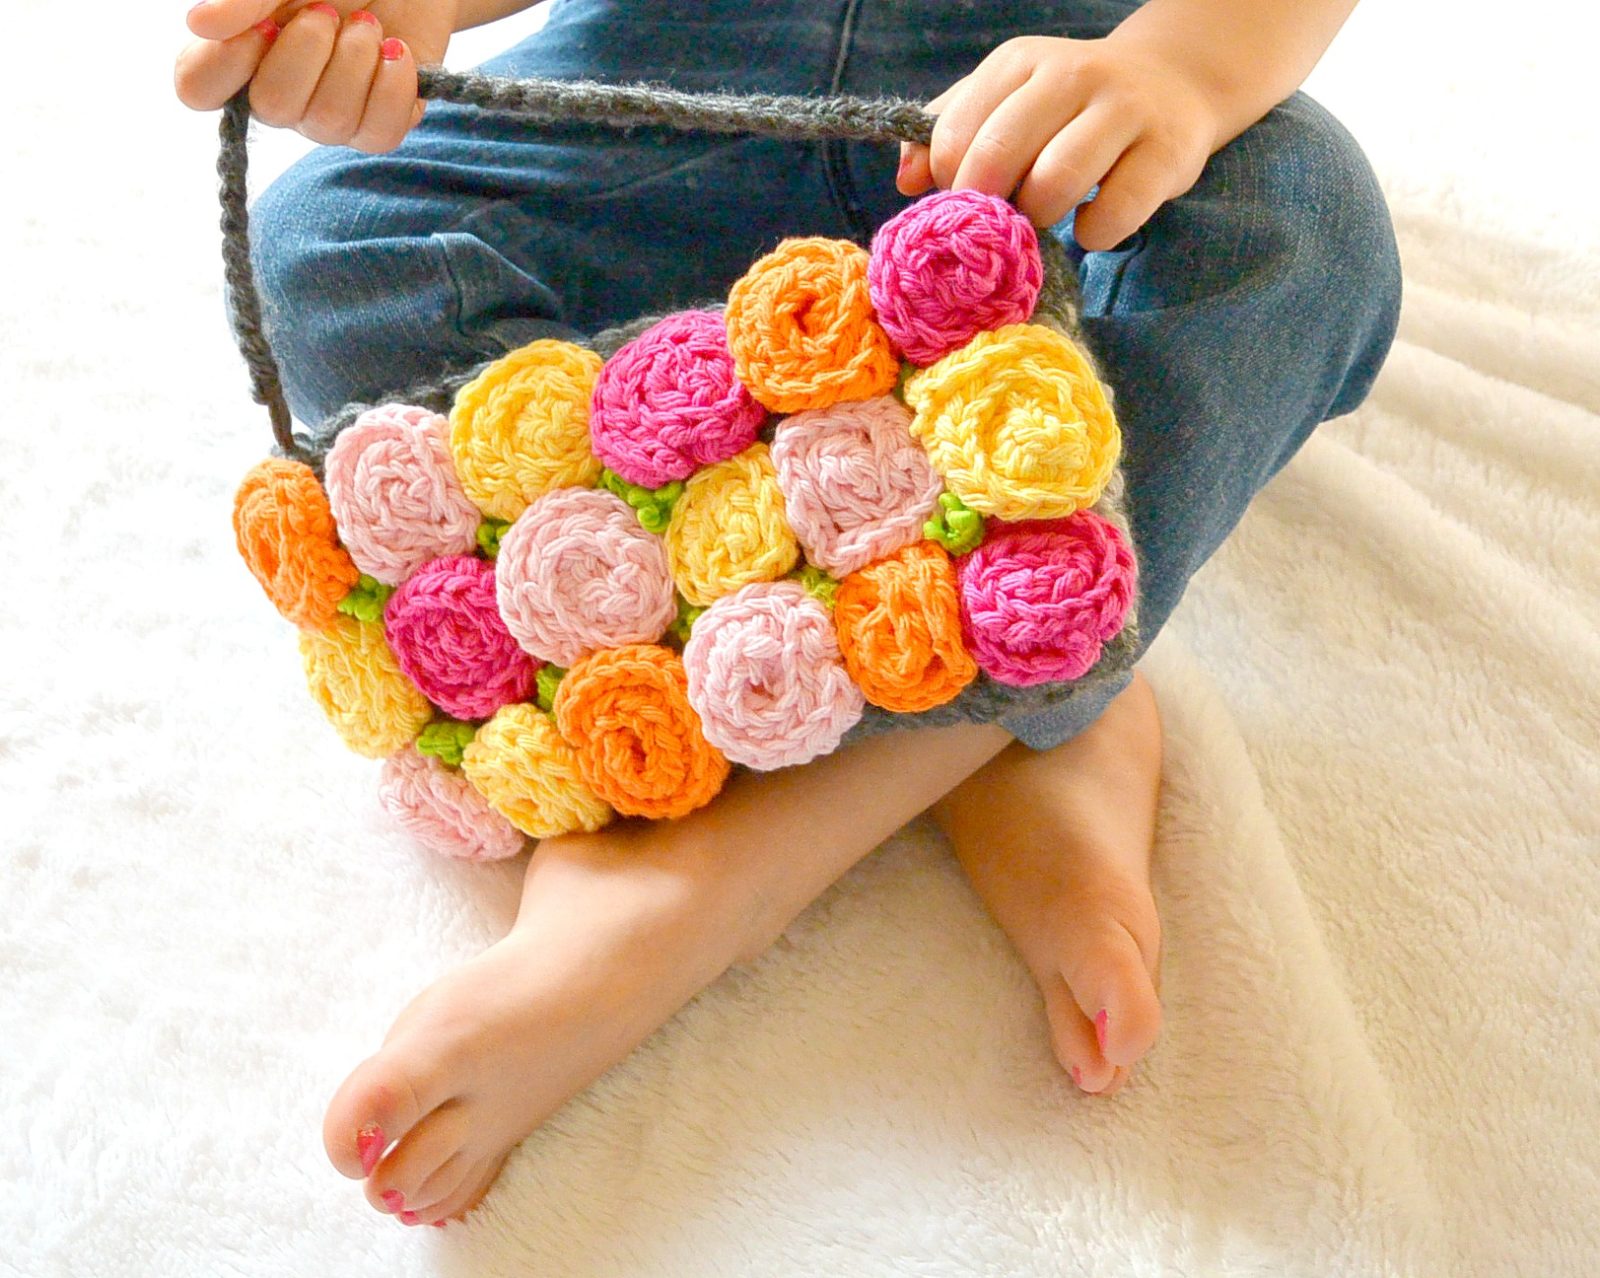 কুশিকাটার ব্যাগ | কুরুশের ব্যাগ | crochet bag | crochet purse | diy hand bag  | woolen crosia batua | Crochet bag tutorials, Crochet bag pattern, Crochet  kids hats